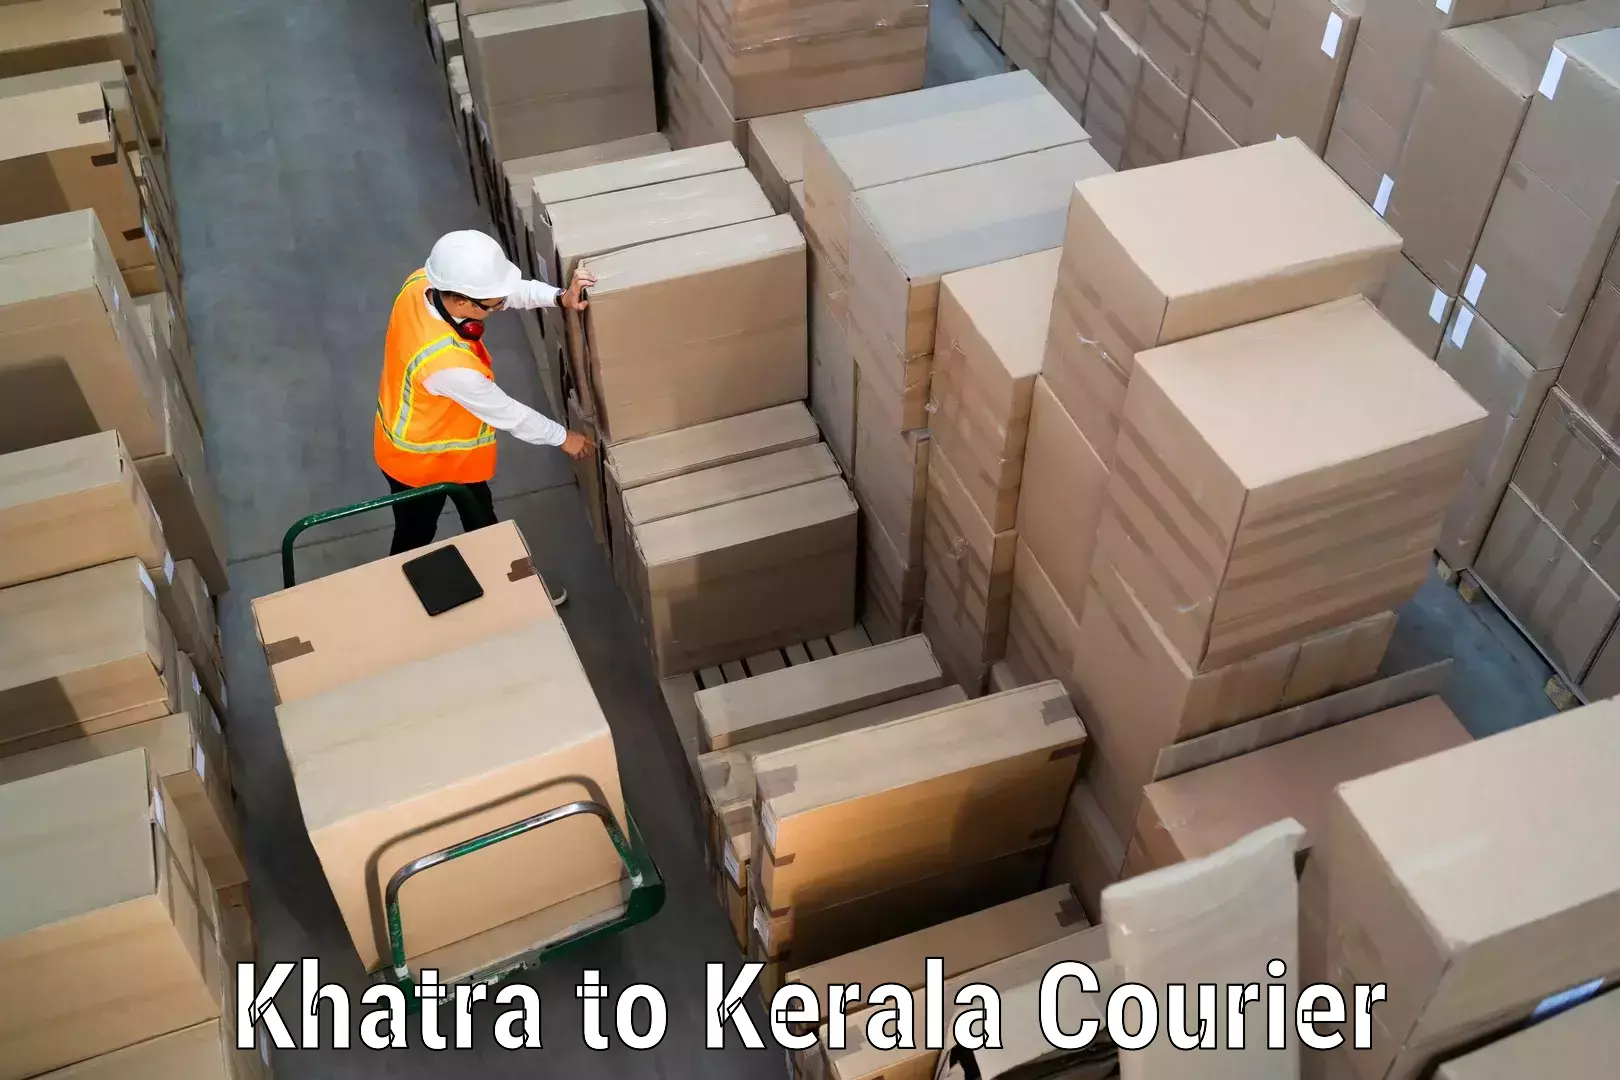 Flexible parcel services Khatra to Thamarassery